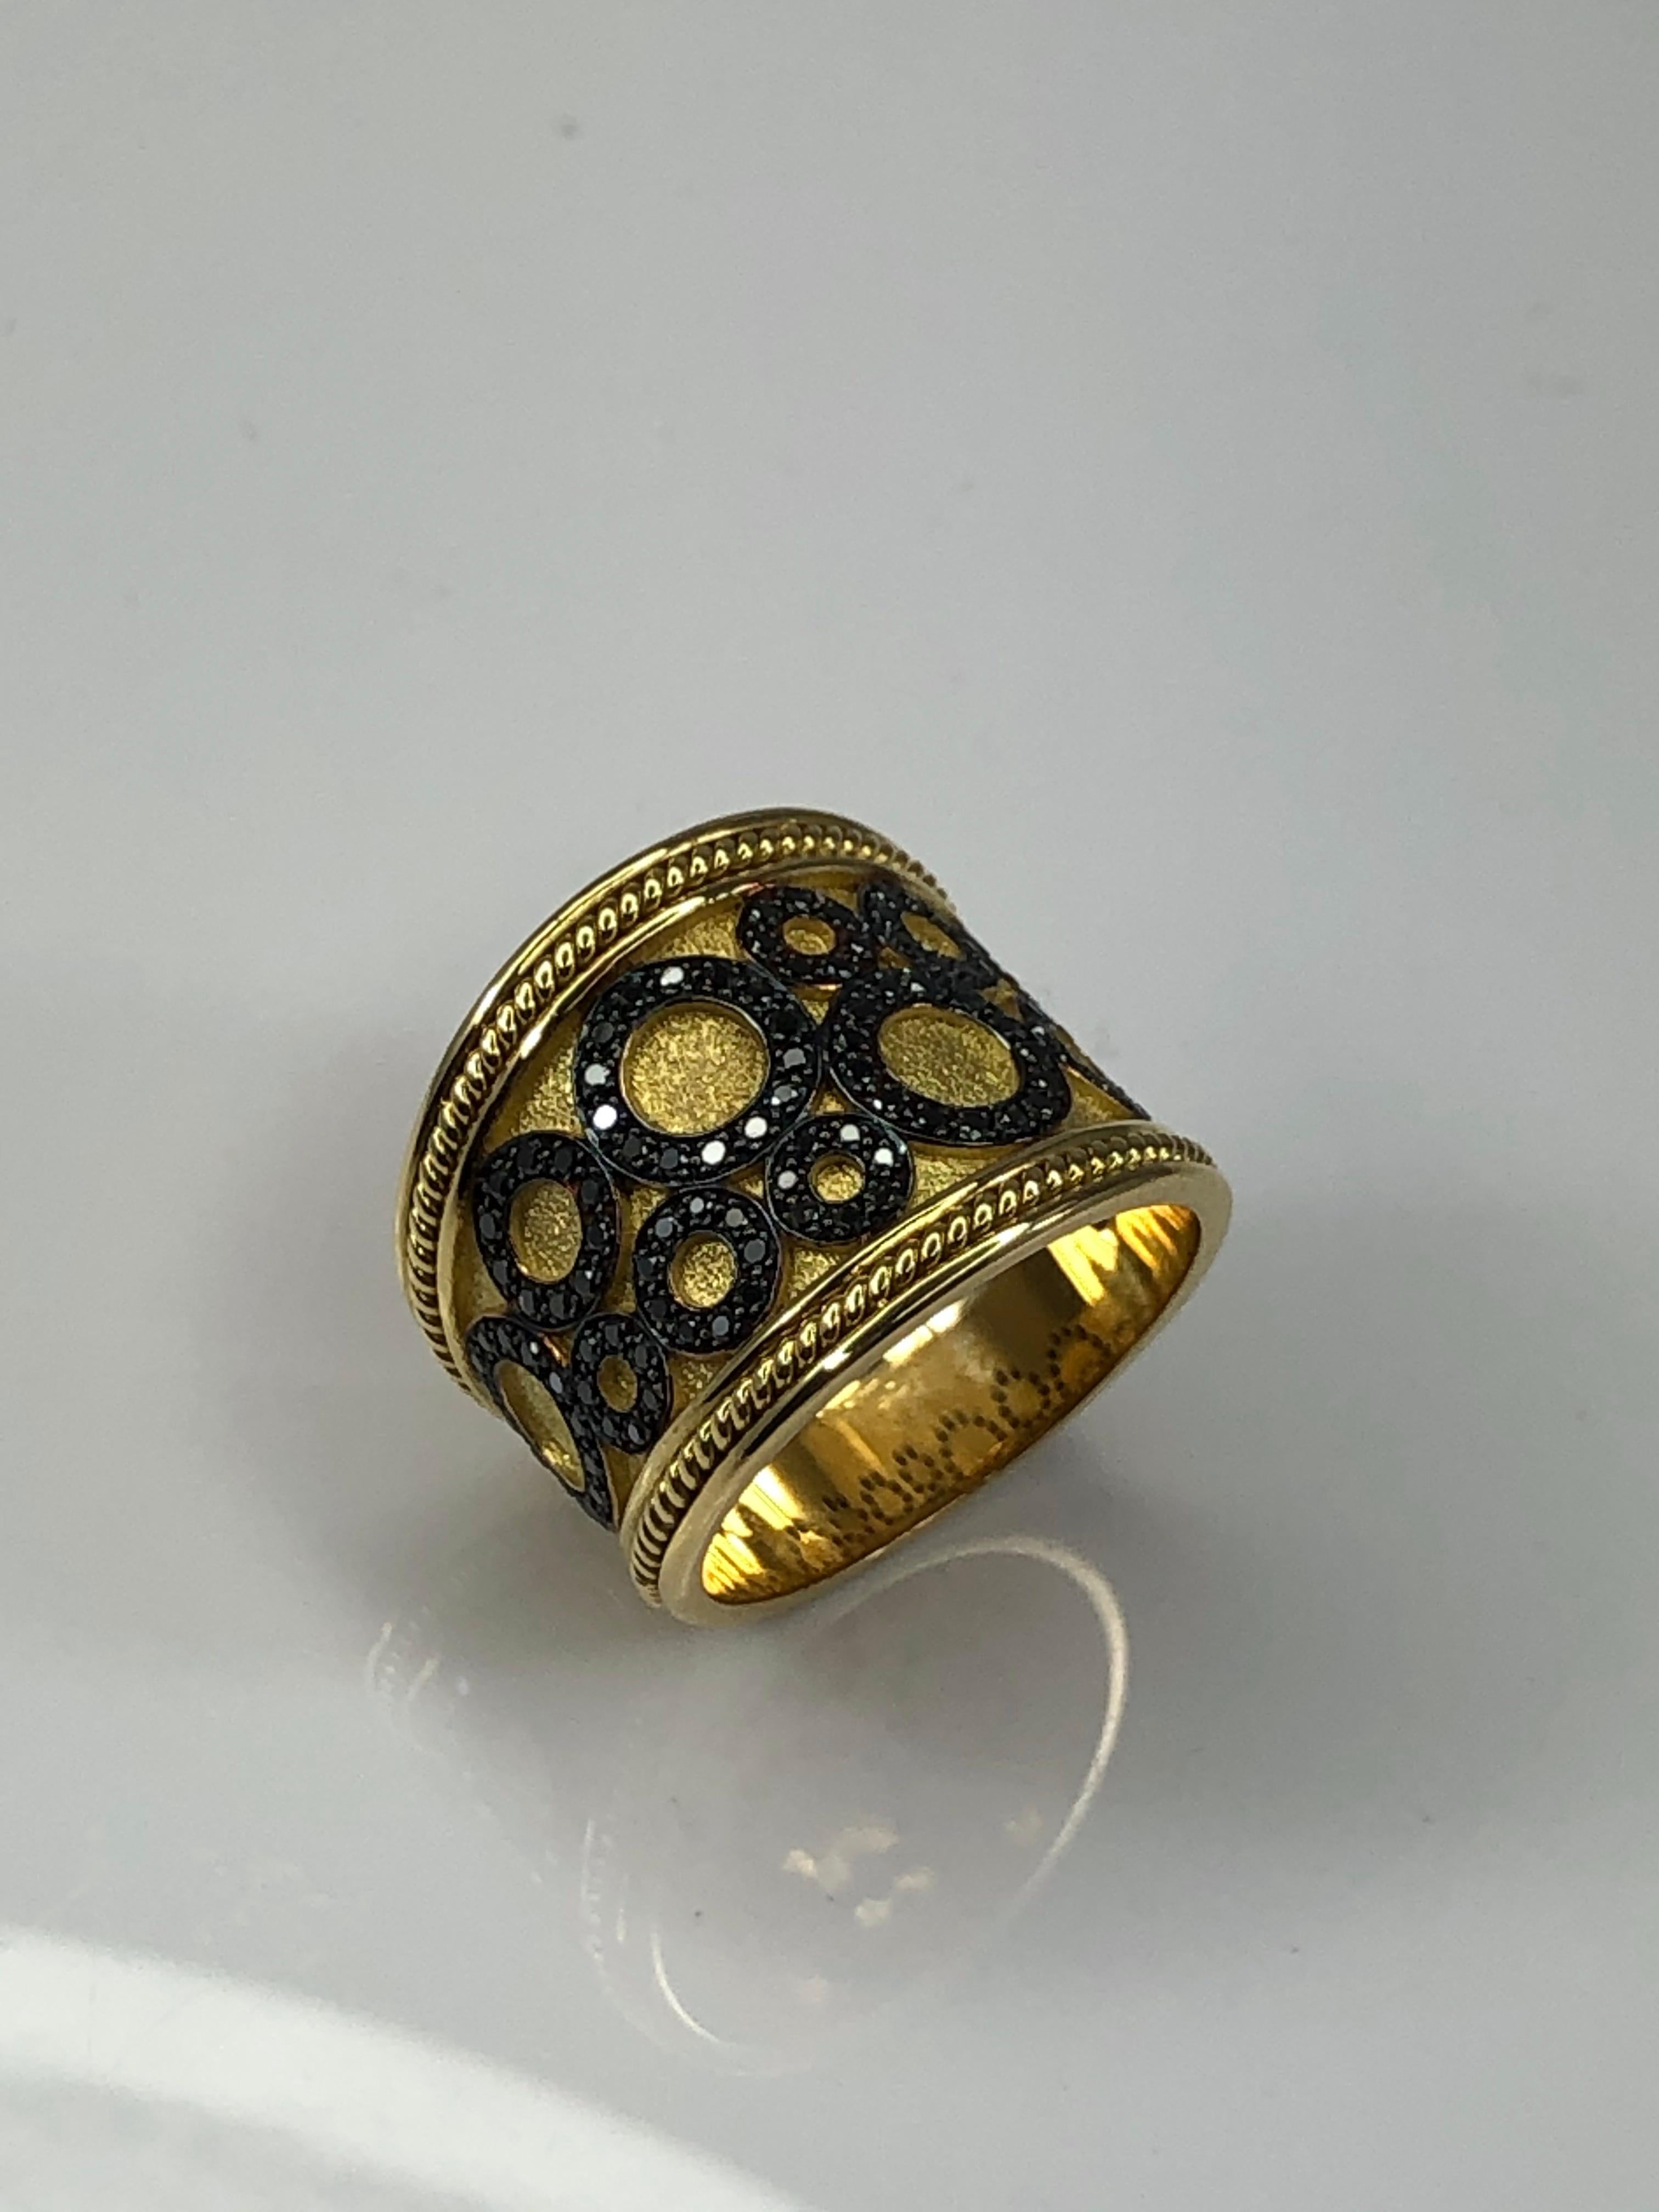 Voici la bague design de S.Georgios faite à la main en or jaune 18 carats en Grèce. Cette bague combine l'ancienne technique byzantine avec un design moderne. Sur un fond de velours se détache un ensemble de cercles décorés de diamants noirs d'un